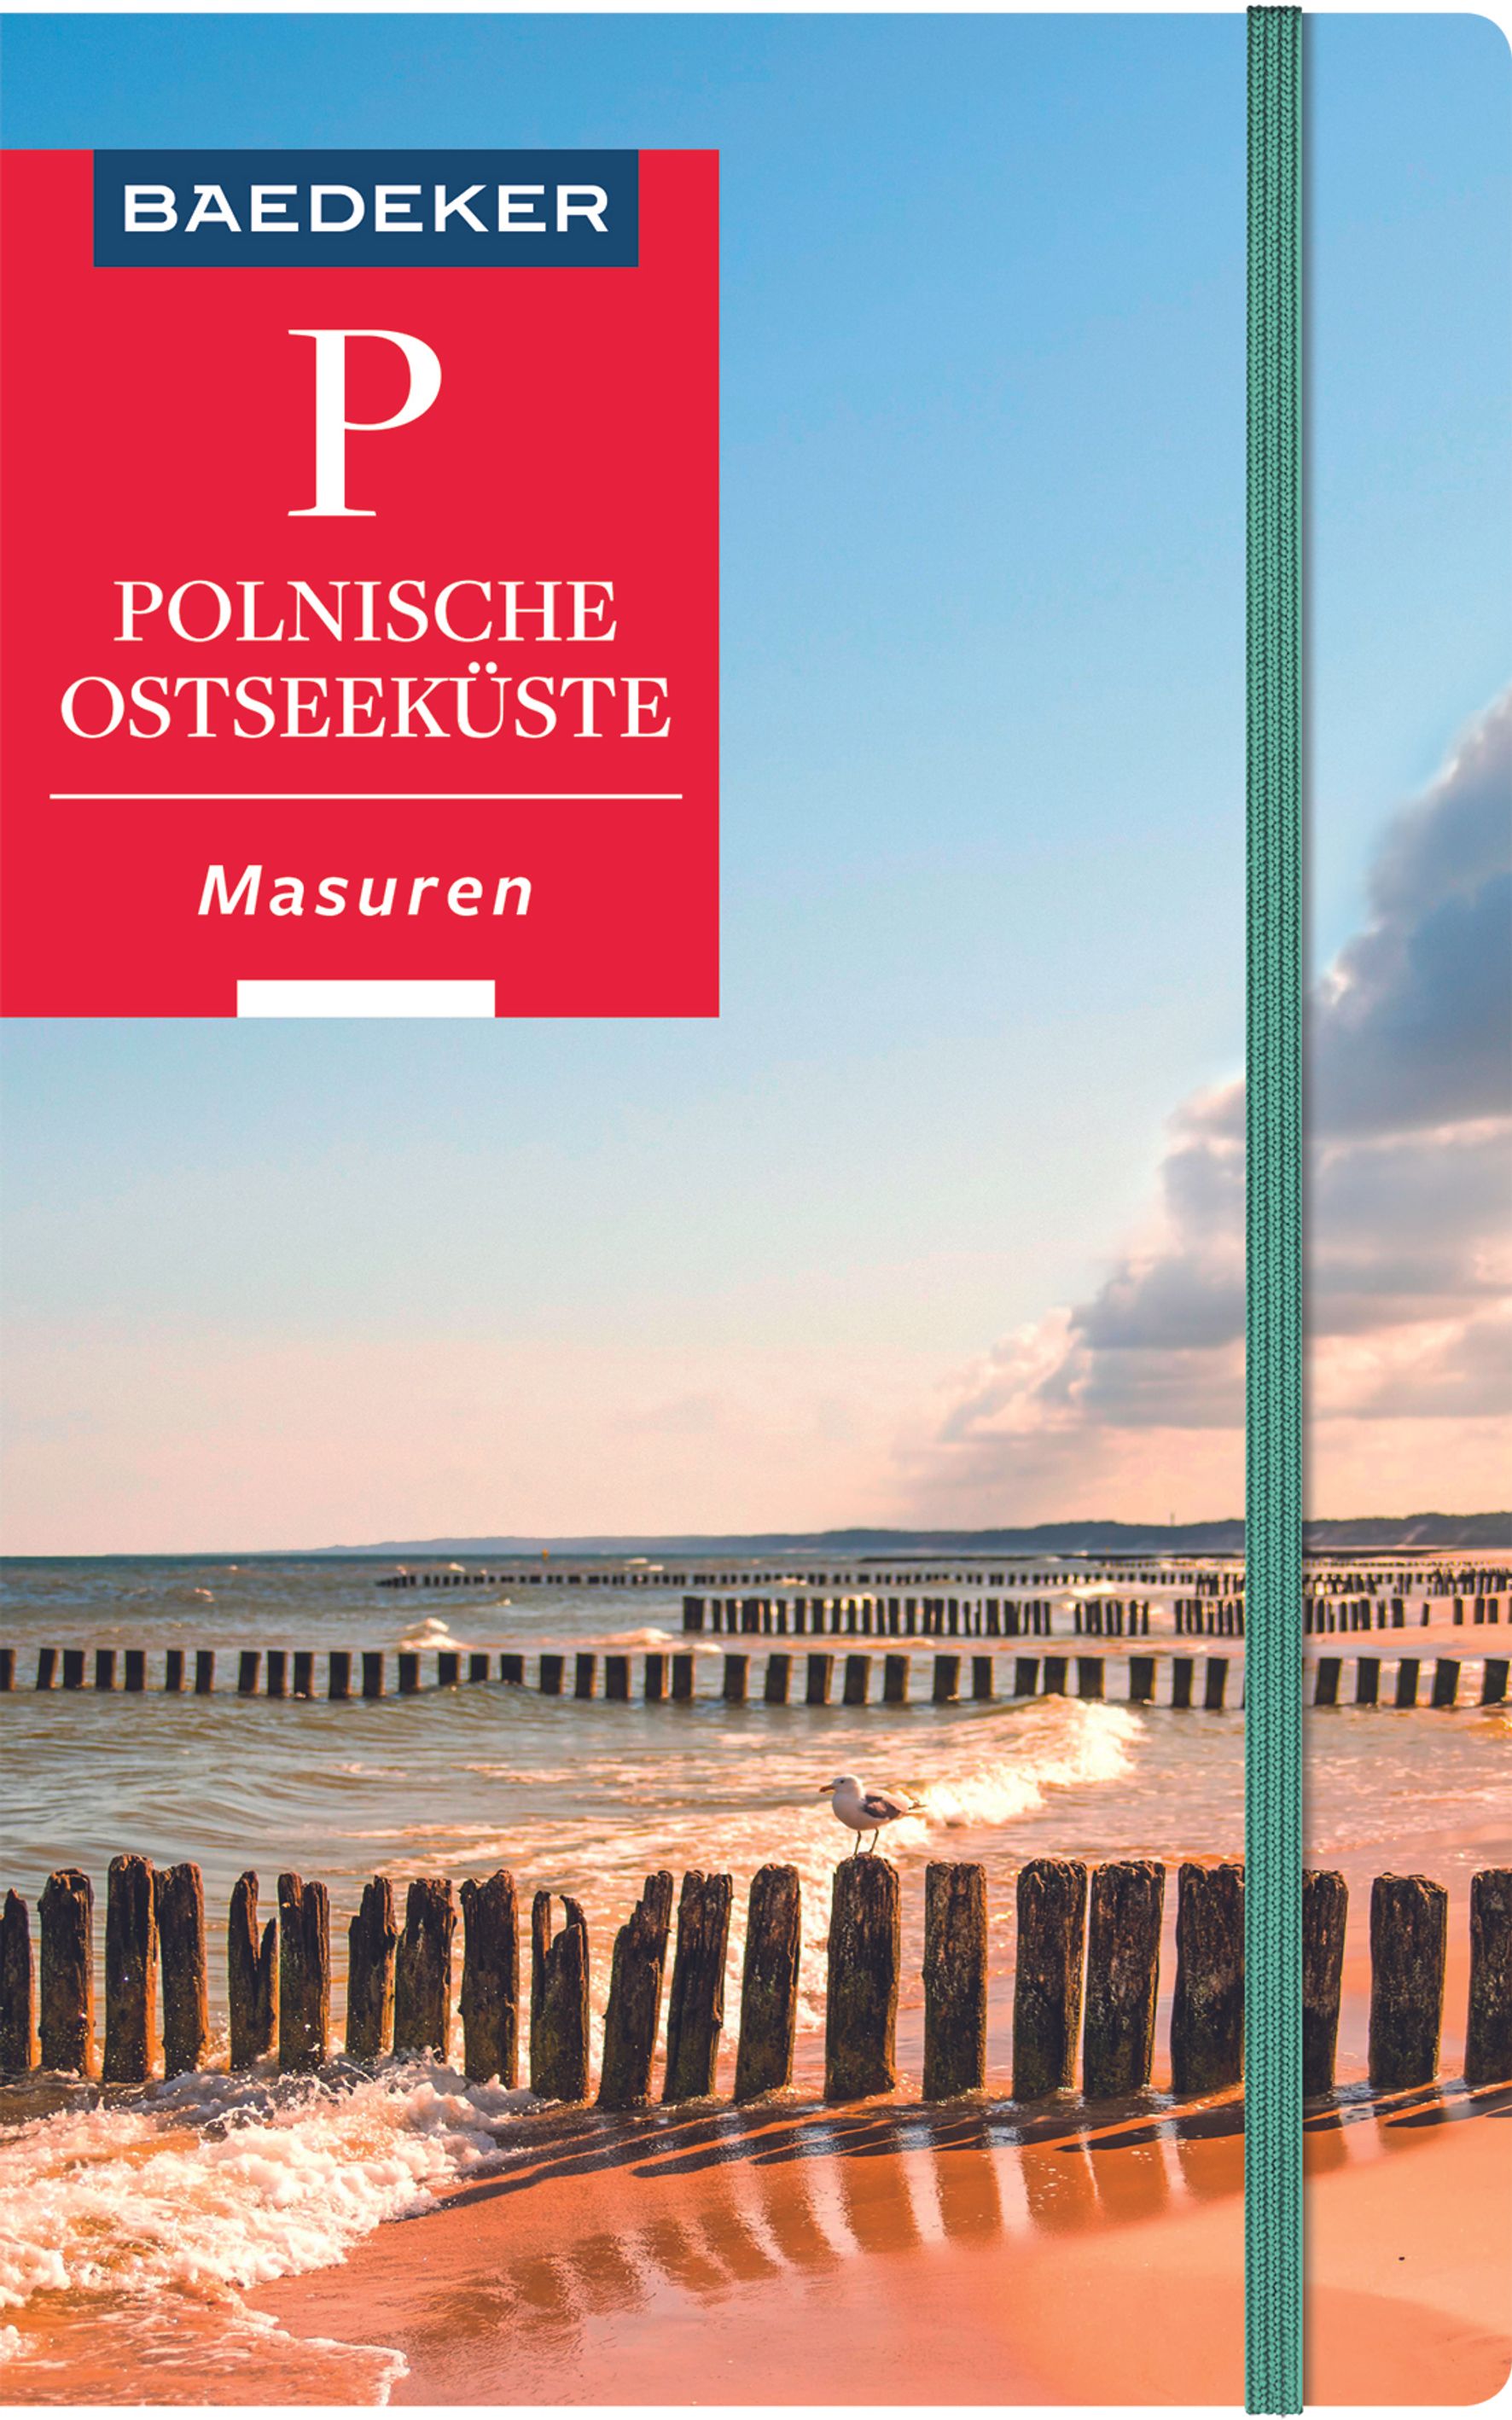 Baedeker Polnische Ostseeküste, Masuren, Danzig